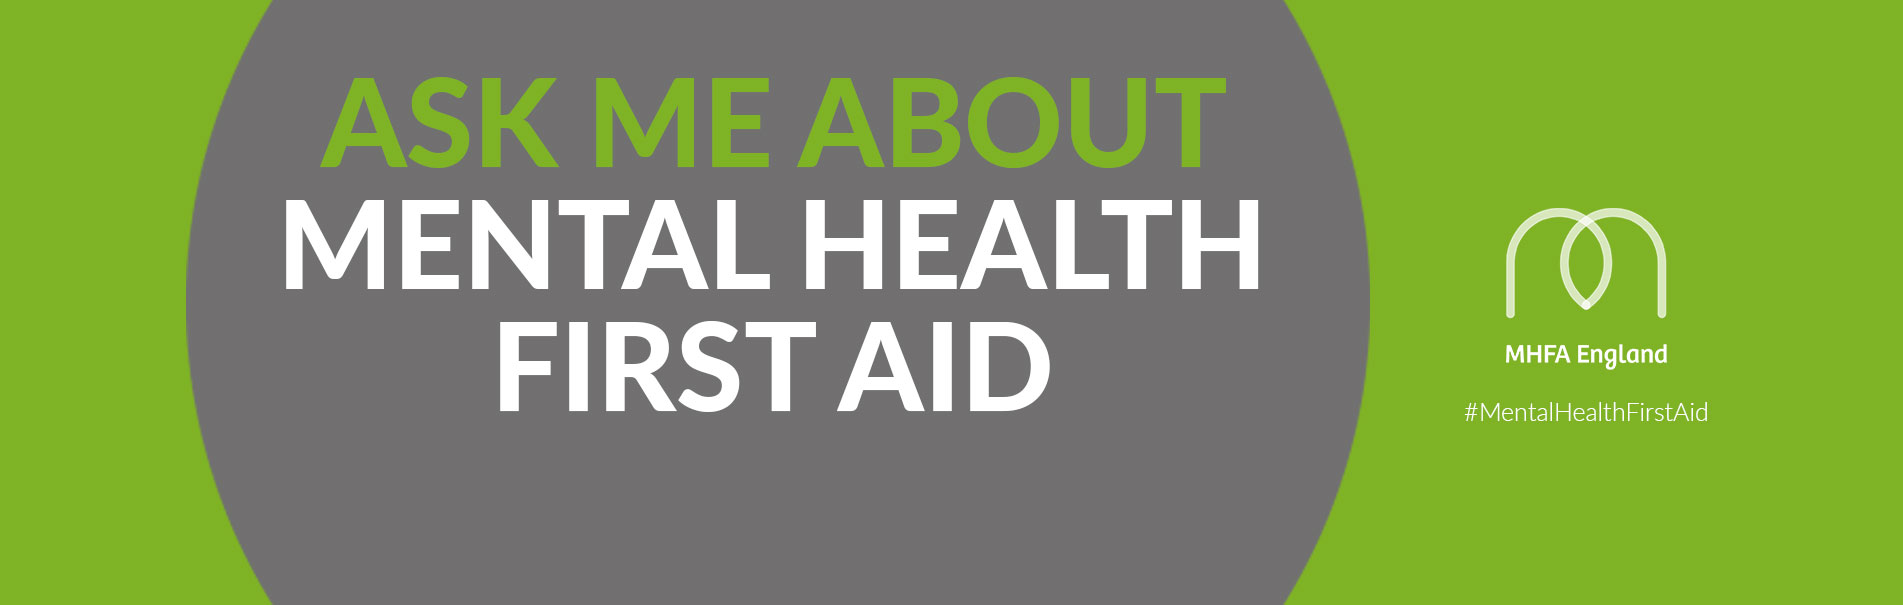 Mental health first aid banner